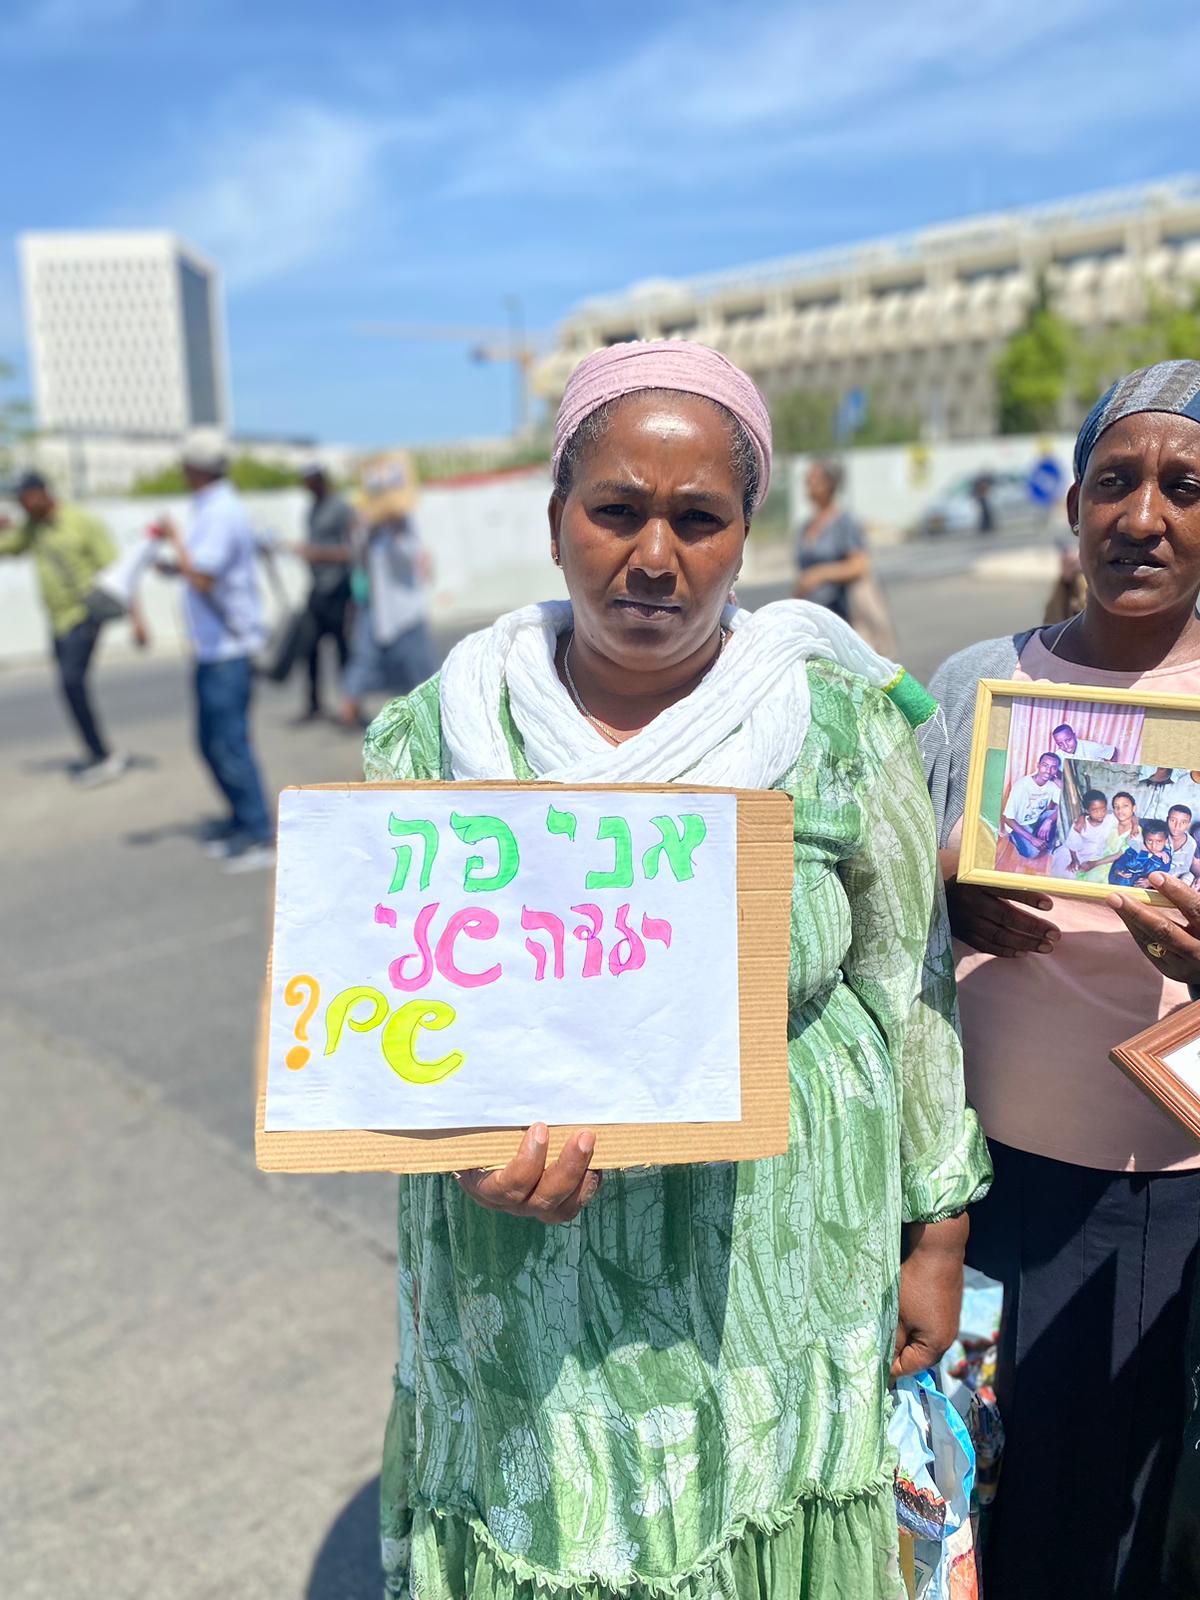 יארדאו בהפגנה להעלאת יהודי אתיופיה הממתינים לעלייה (צילום: יהל פרג')